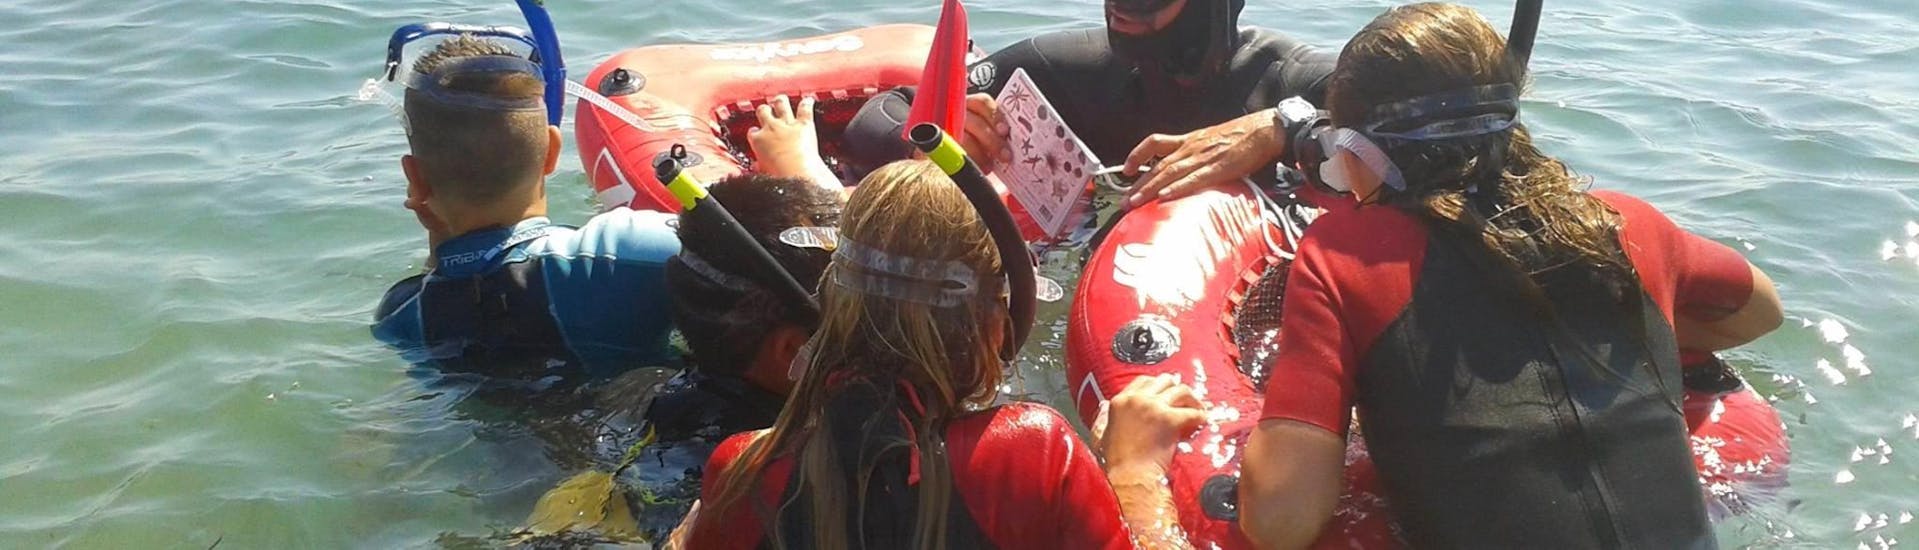 L'istruttore spiega ai bambini cosa vedranno durante lo snorkeling a Cap d'Antibes vicino a Nizza con BeFree2Dive.